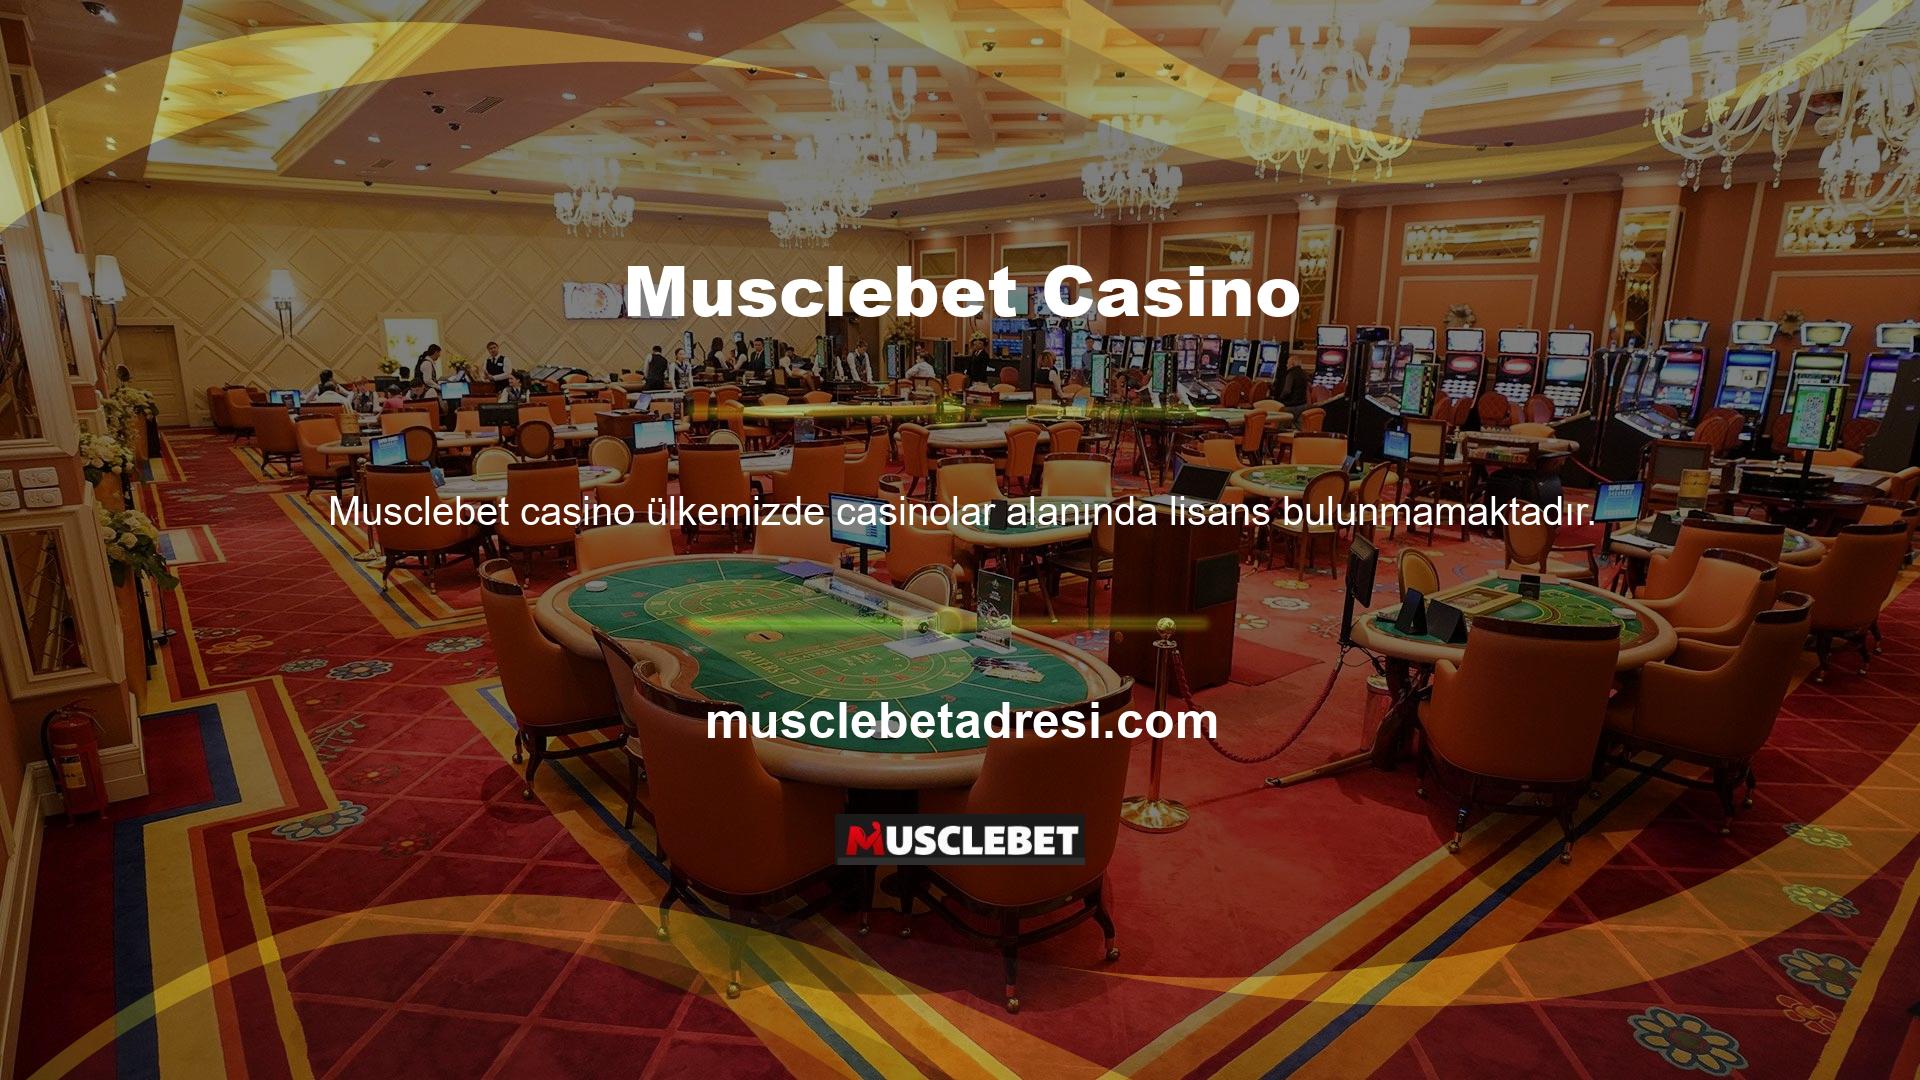 Casino sektöründe faaliyet göstermek isteyen web siteleri yabancı lisans almaktadır